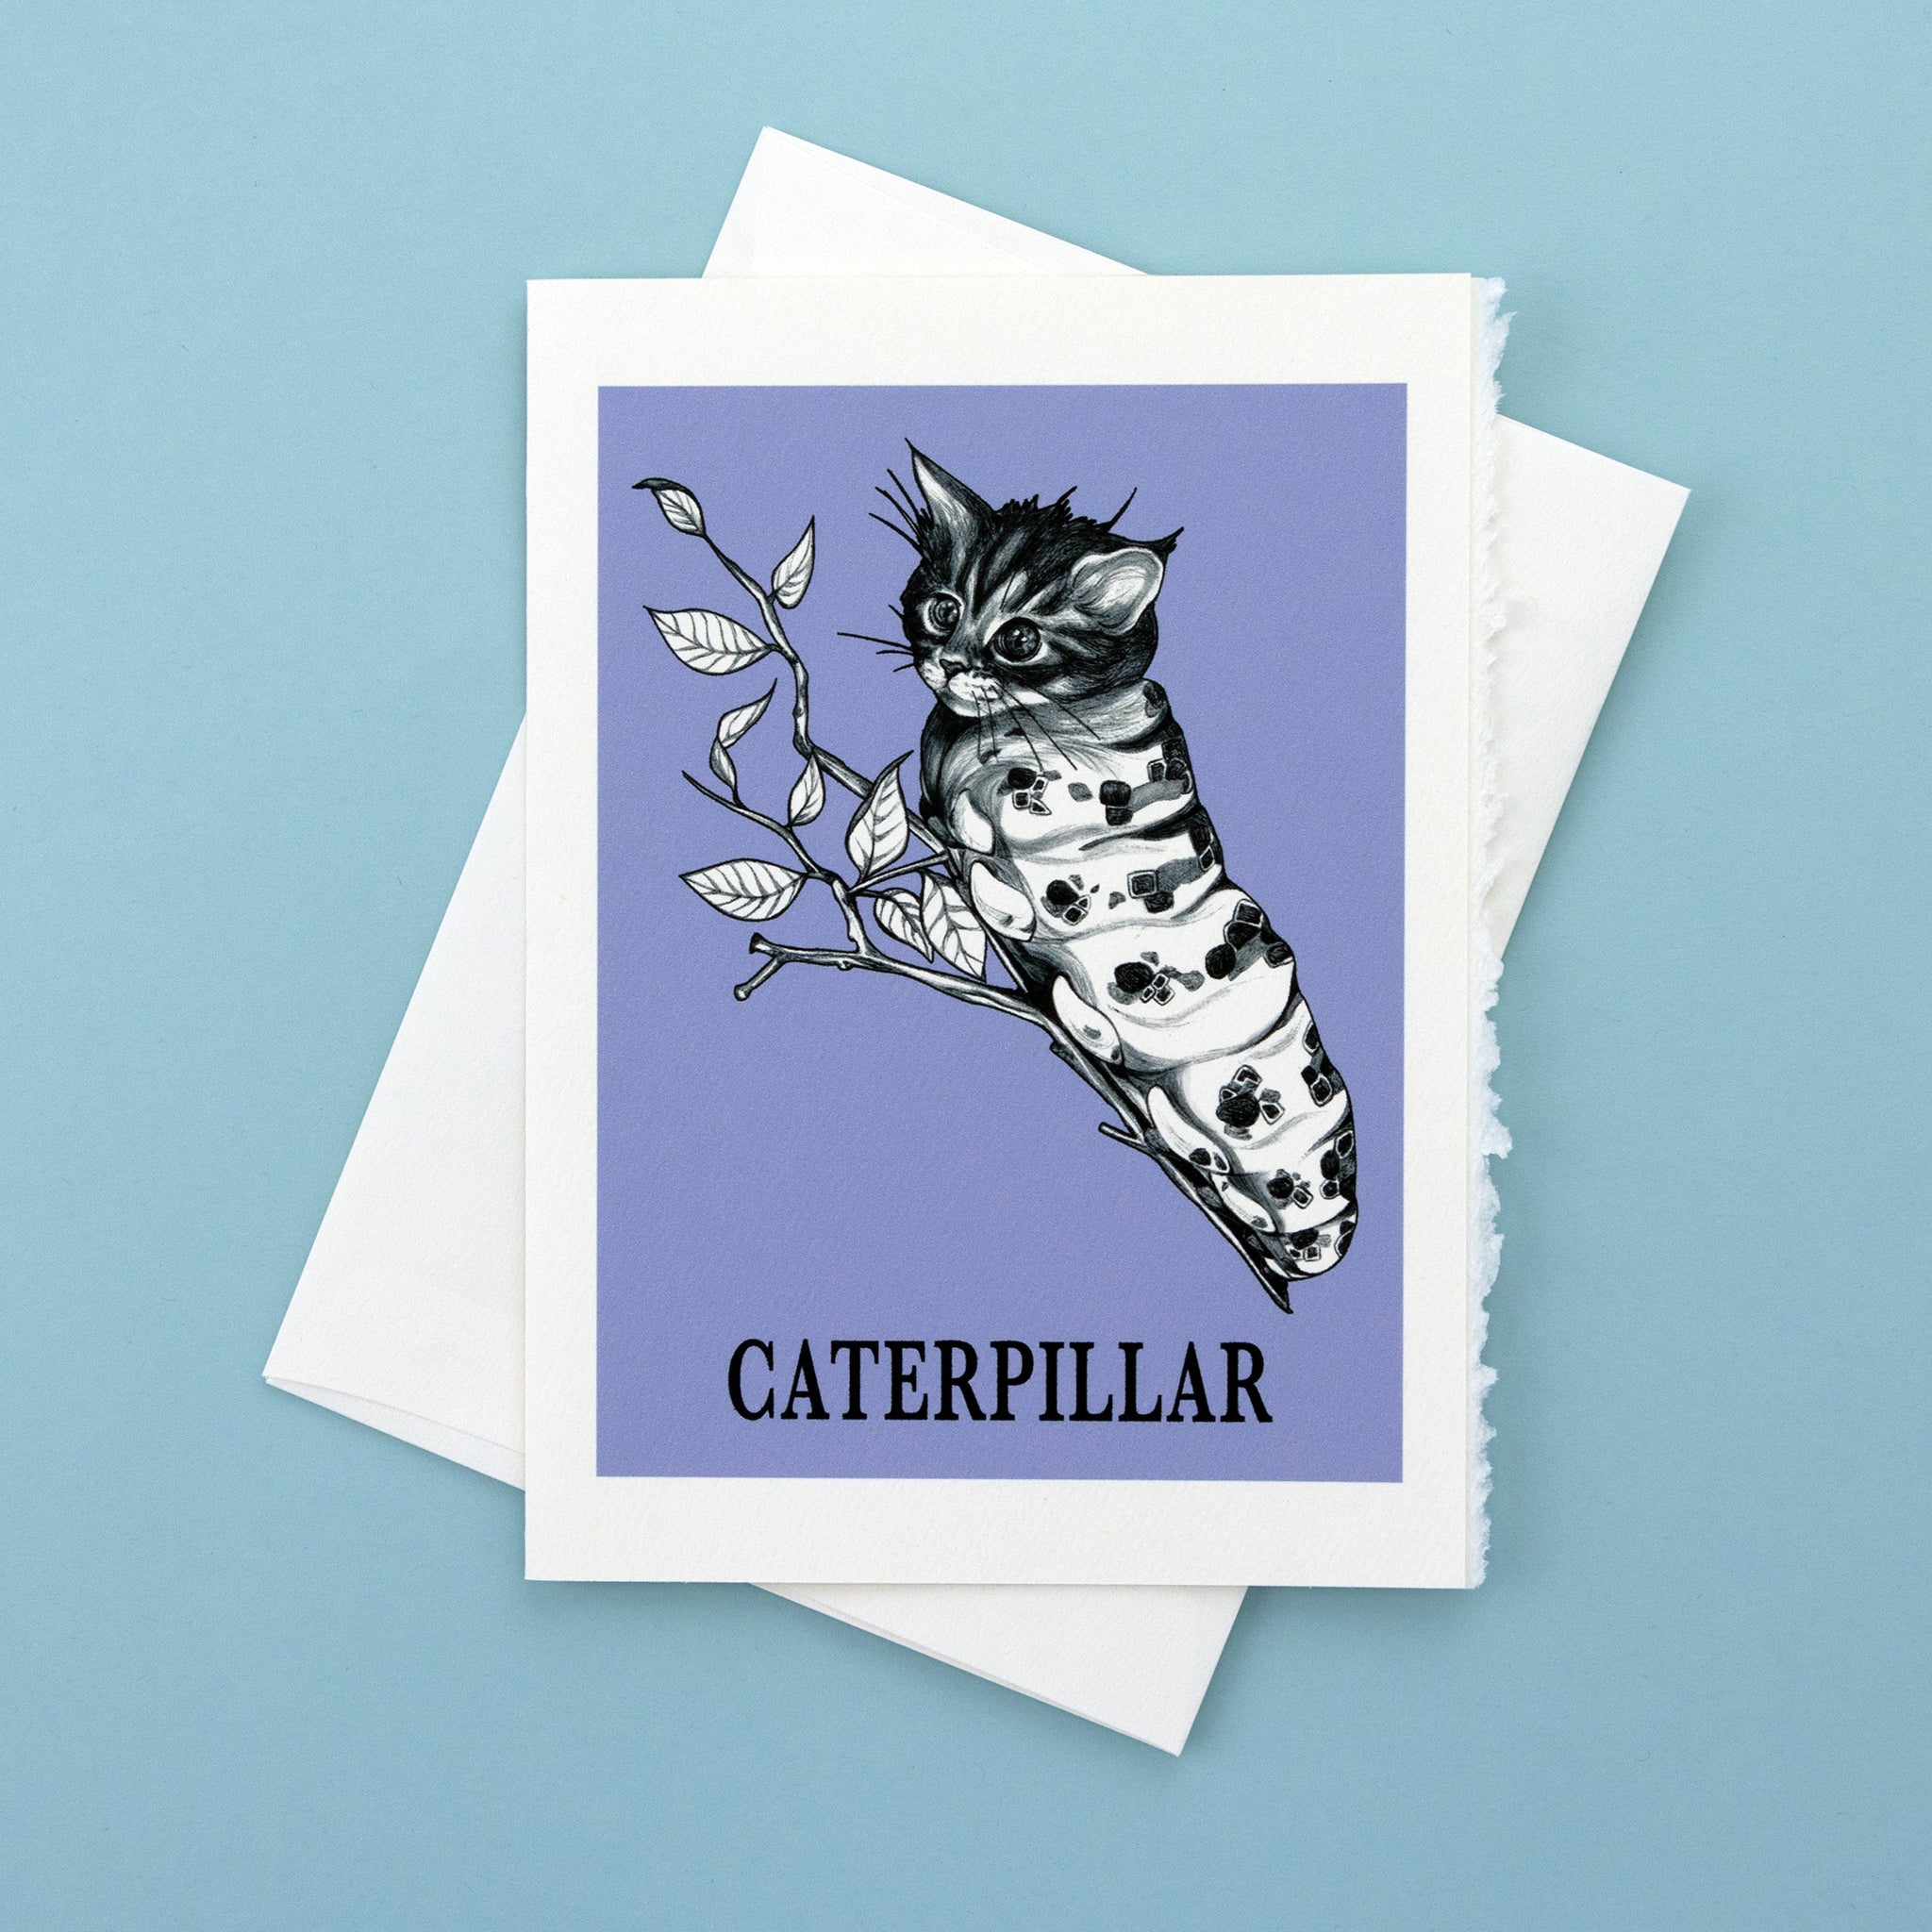 Caterpillar 5x7" Greeting Card